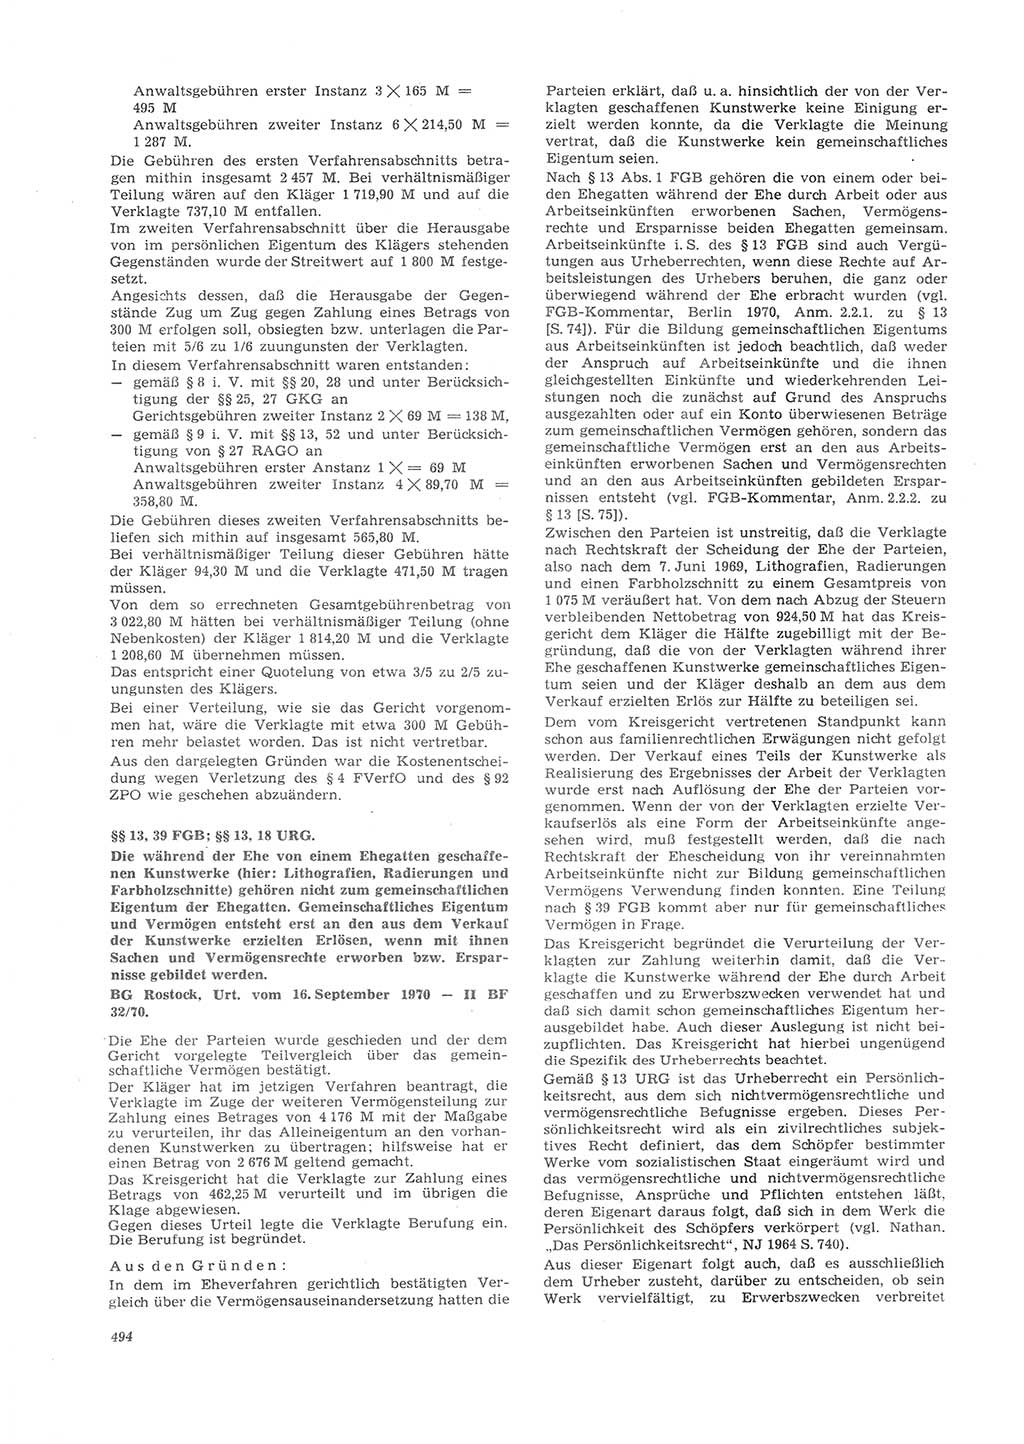 Neue Justiz (NJ), Zeitschrift für Recht und Rechtswissenschaft [Deutsche Demokratische Republik (DDR)], 26. Jahrgang 1972, Seite 494 (NJ DDR 1972, S. 494)